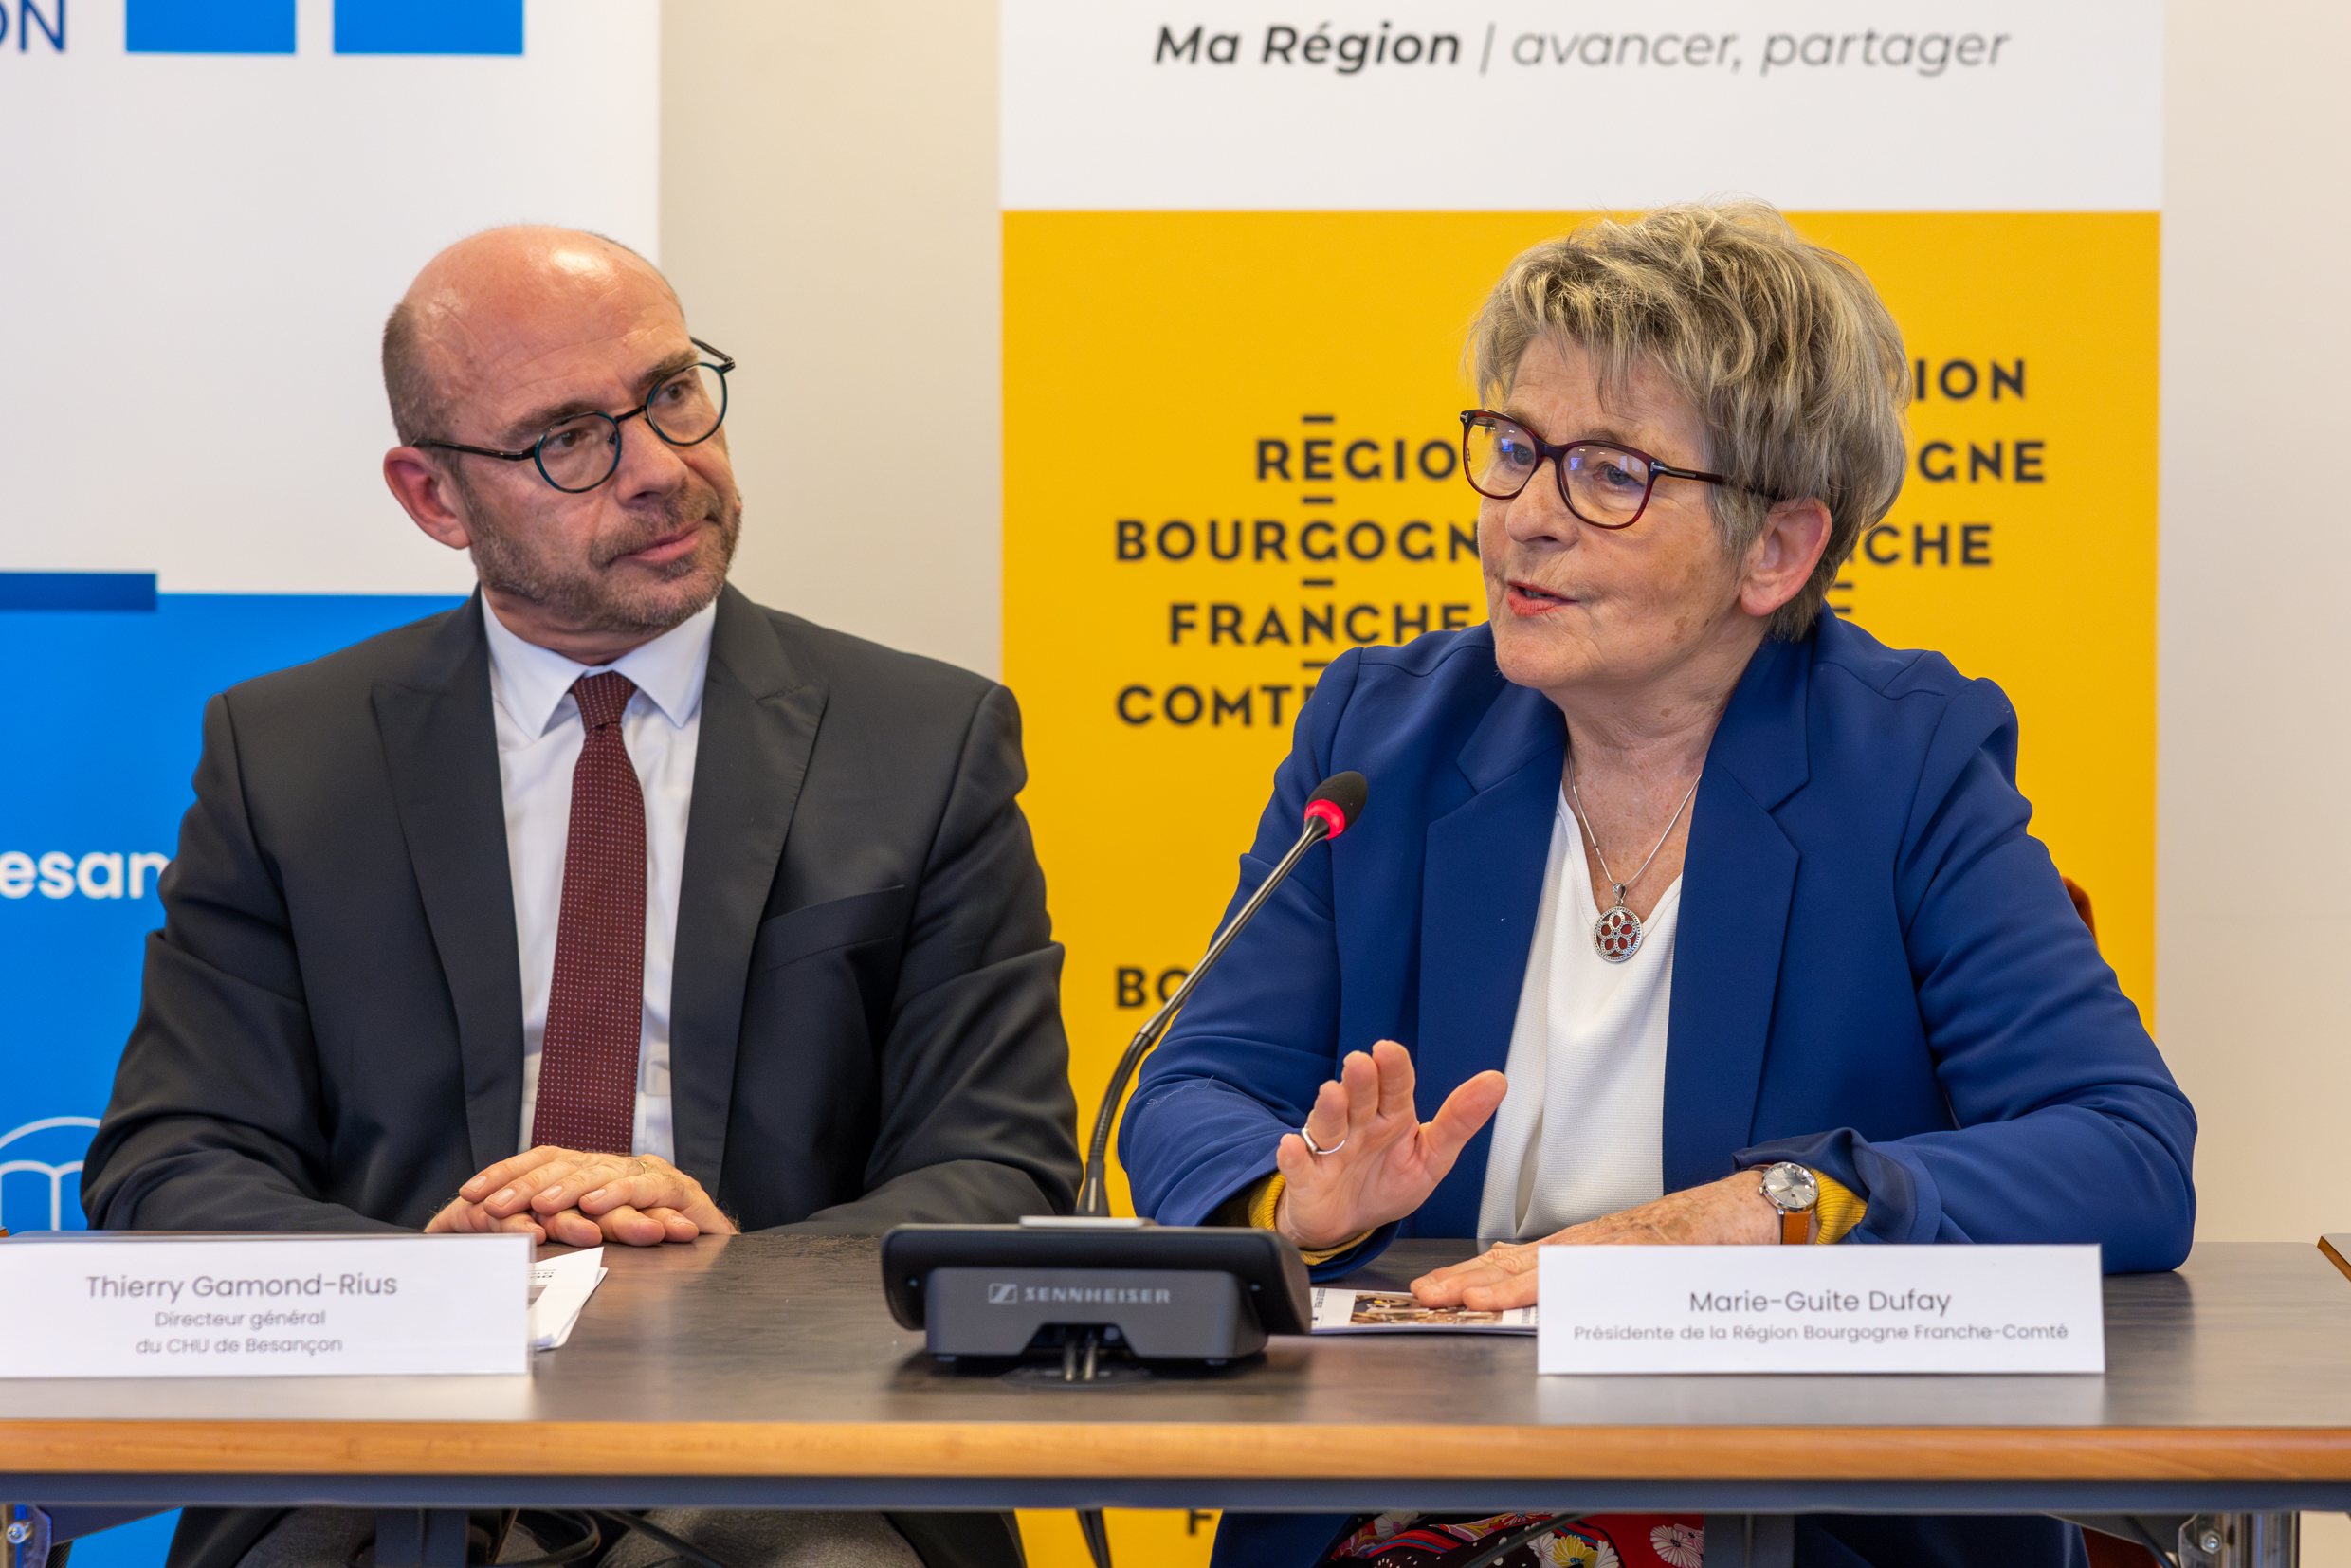 Marie-Guite Dufay, aux côtés de Thierry Gamond-Rius, directeur général du CHU de Besançon. Photo : Xavier Ducordeaux.